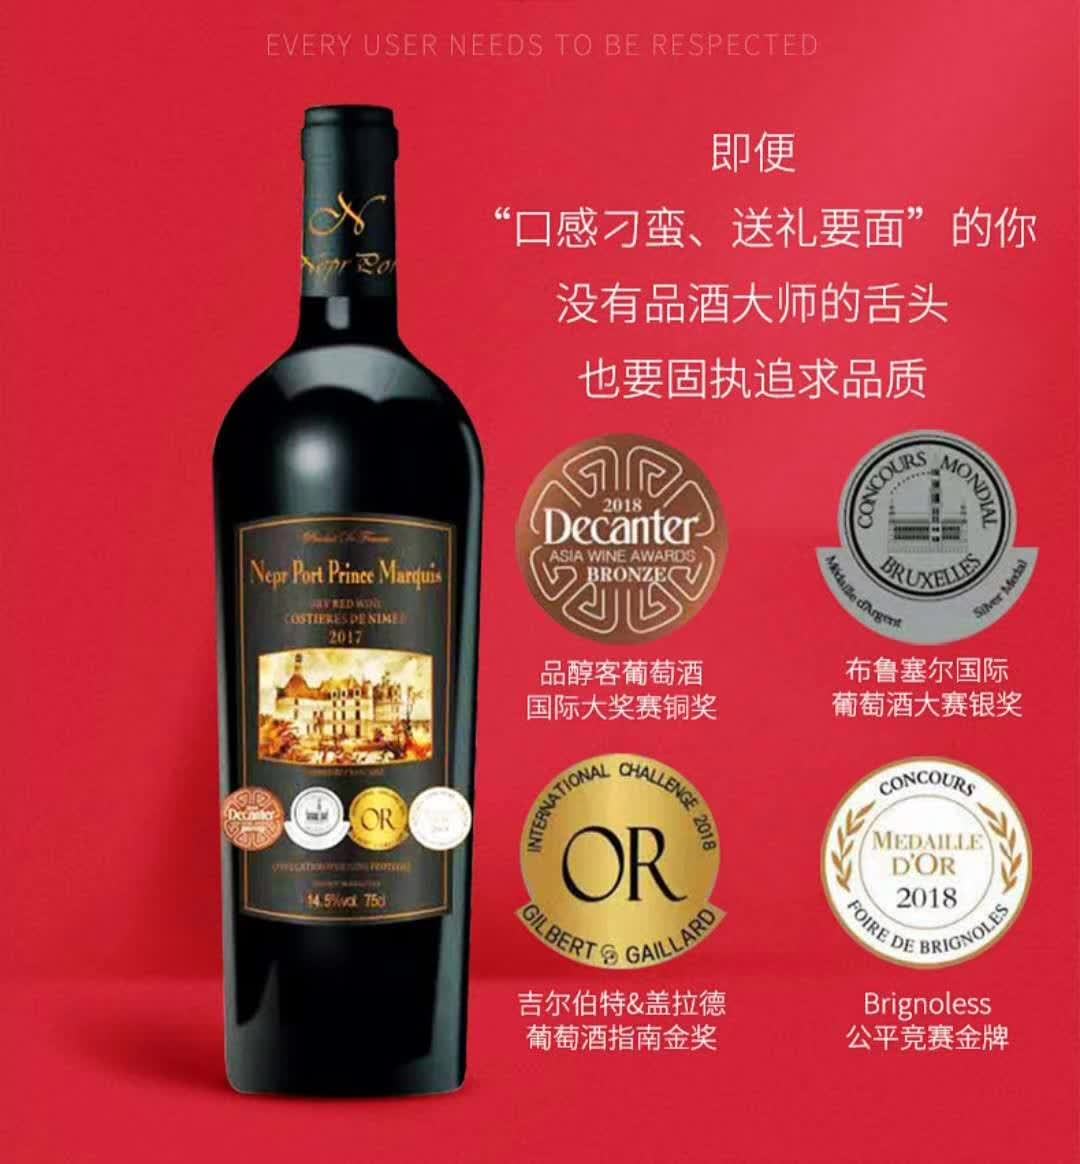 上海万耀诺波特王爵干红葡萄酒现货供应法国原装原瓶进口AOP级别1200g重型瓶干红进口红酒葡萄酒代理加盟